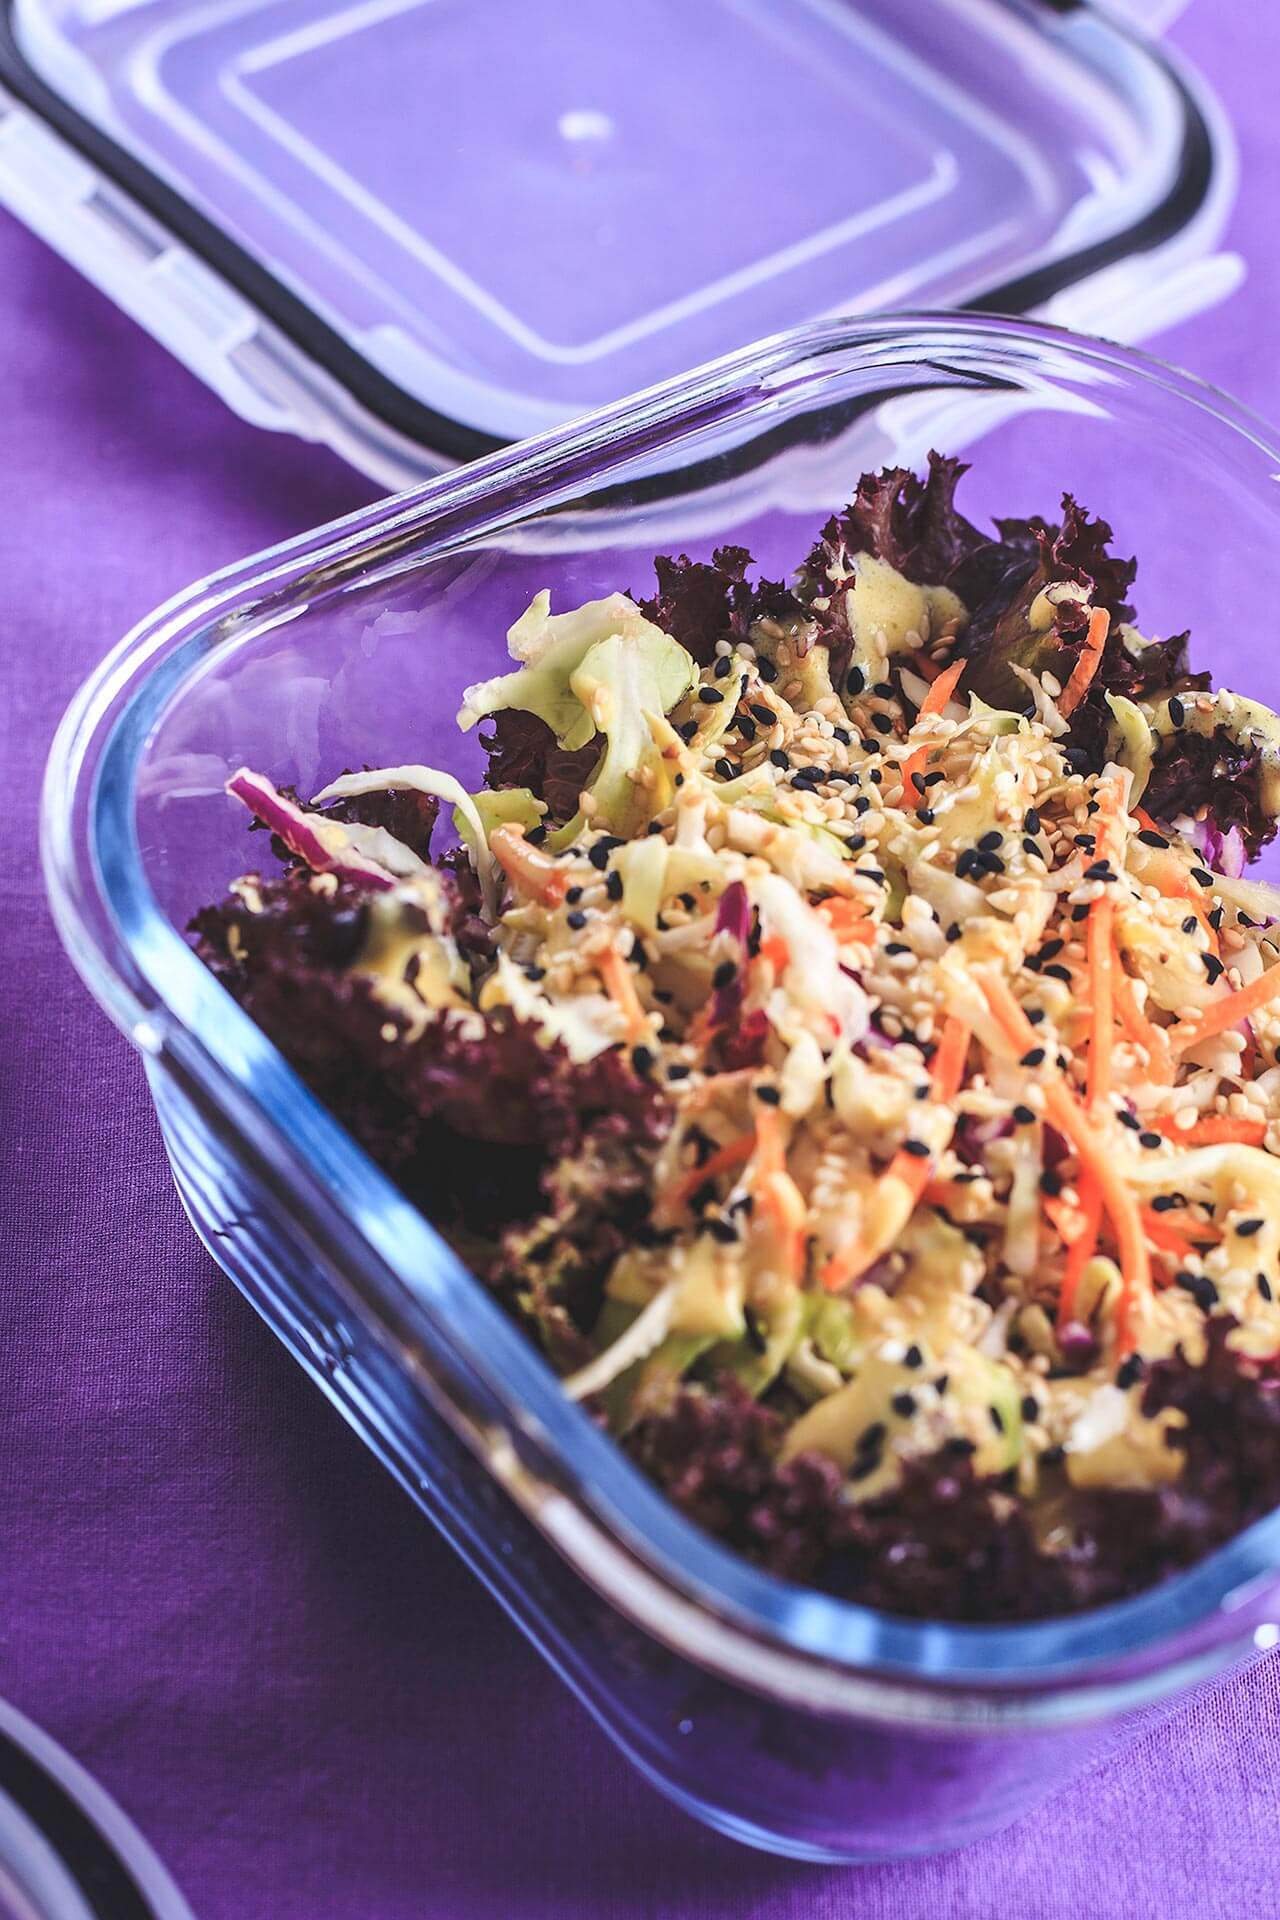 Imagem: Coleslaw: uma saladinha crocante para acompanhar! Foto: Na Minha Panela.